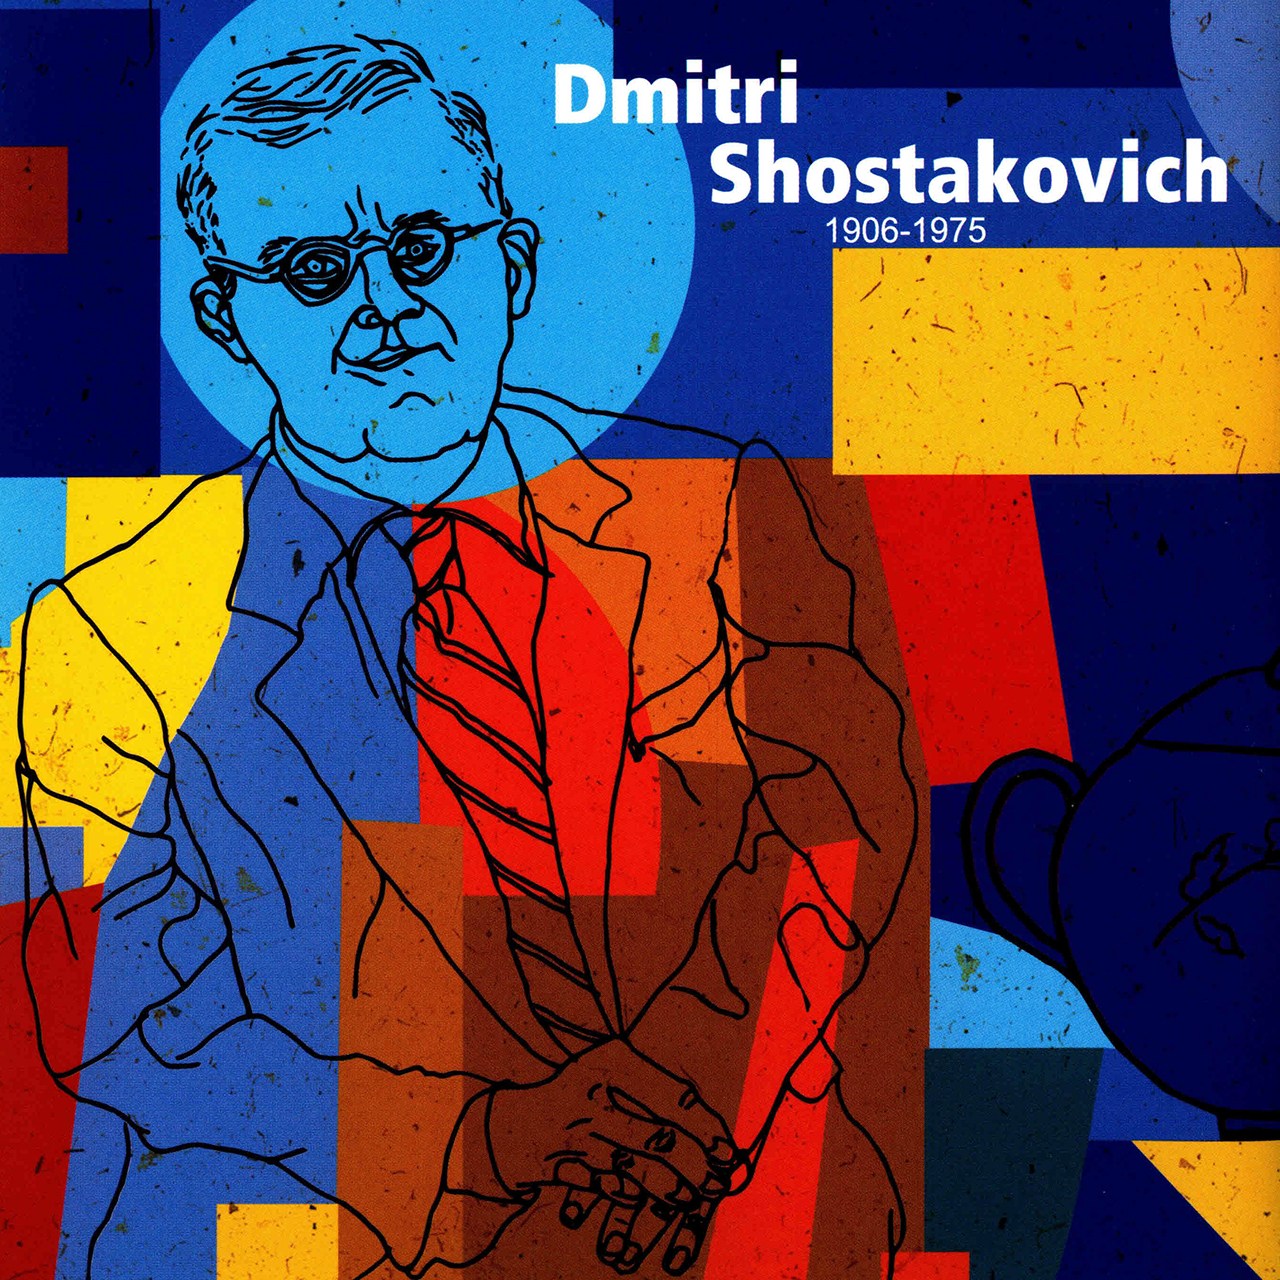 آلبوم موسیقی والس اثر دمیتری شوستاکوویچ